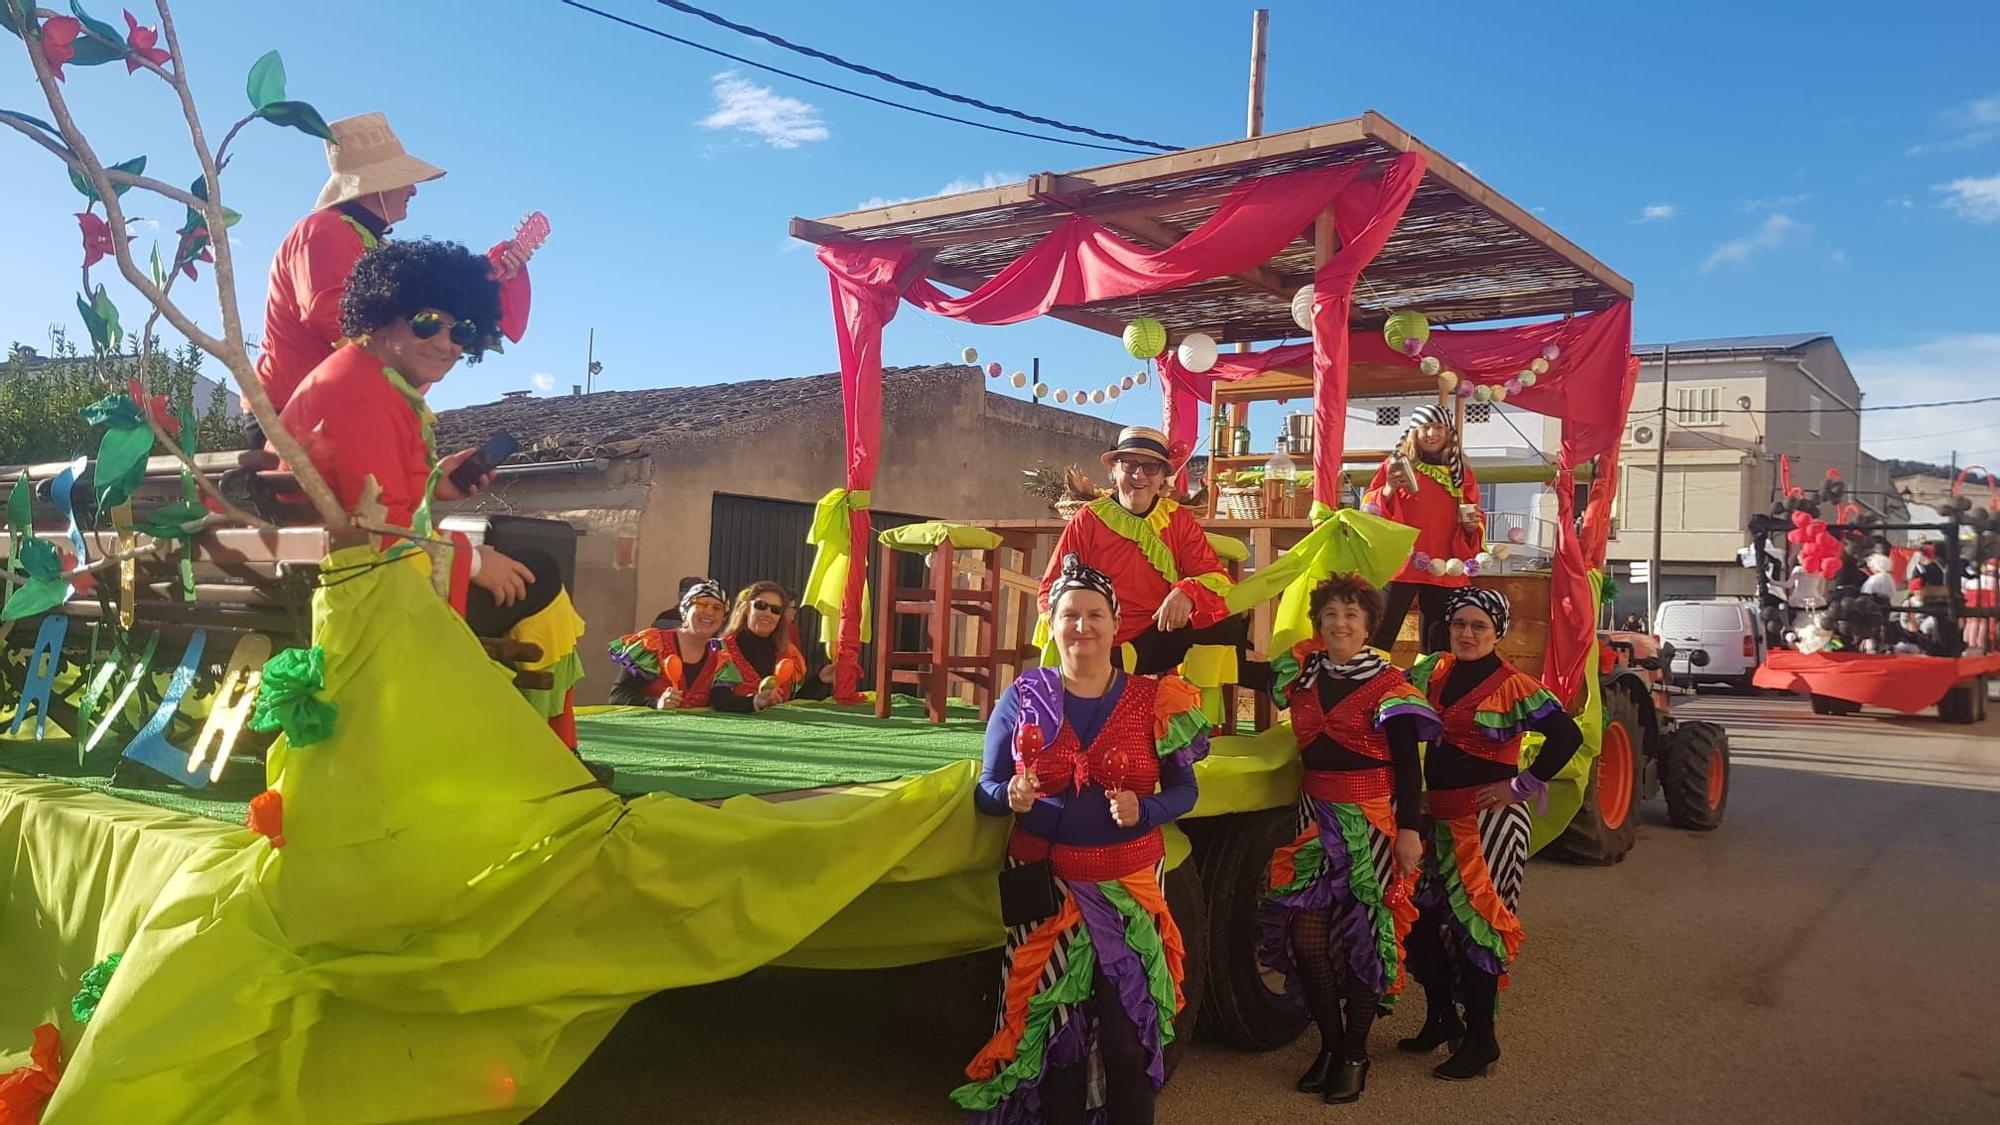 La Part Forana se entrega con 'bauxa' al Carnaval, en imágenes las 'rues' de los pueblos